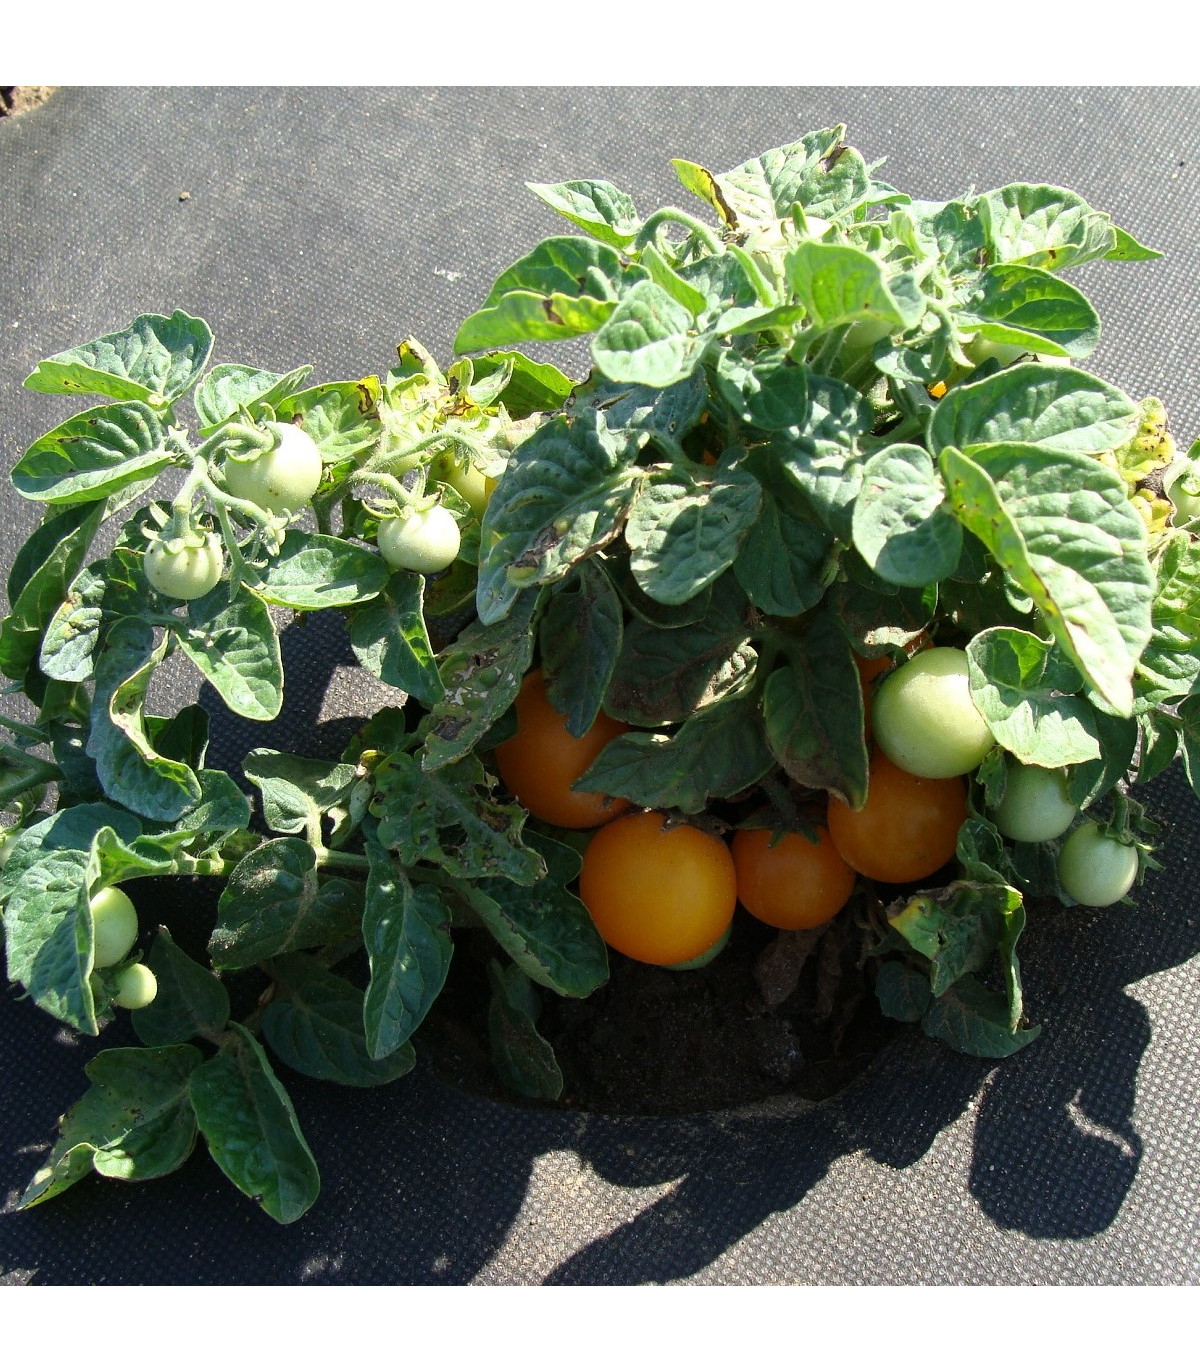 Paradajka Venus - Solanum lycopersicum - semená paradajky - 10 ks